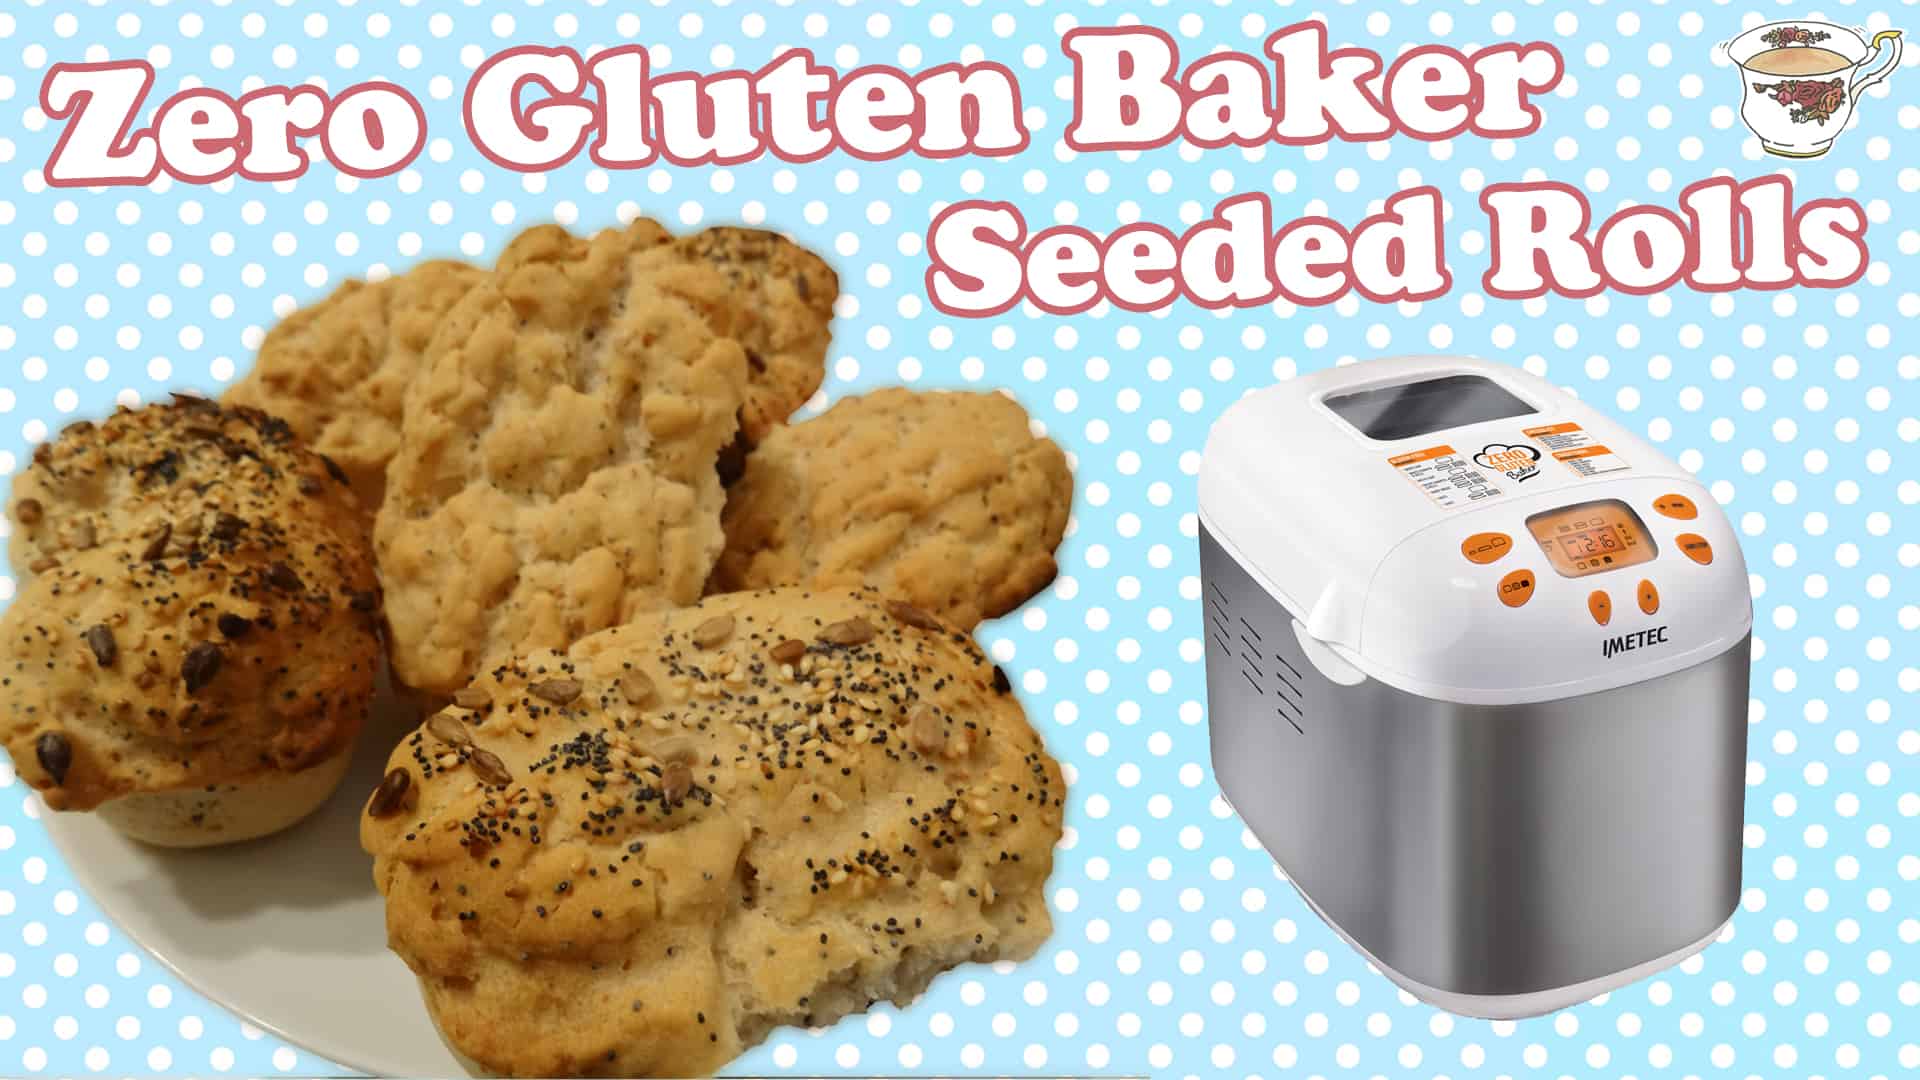 A Gluten Free Bread Maker? Gluten Free Bread Rolls